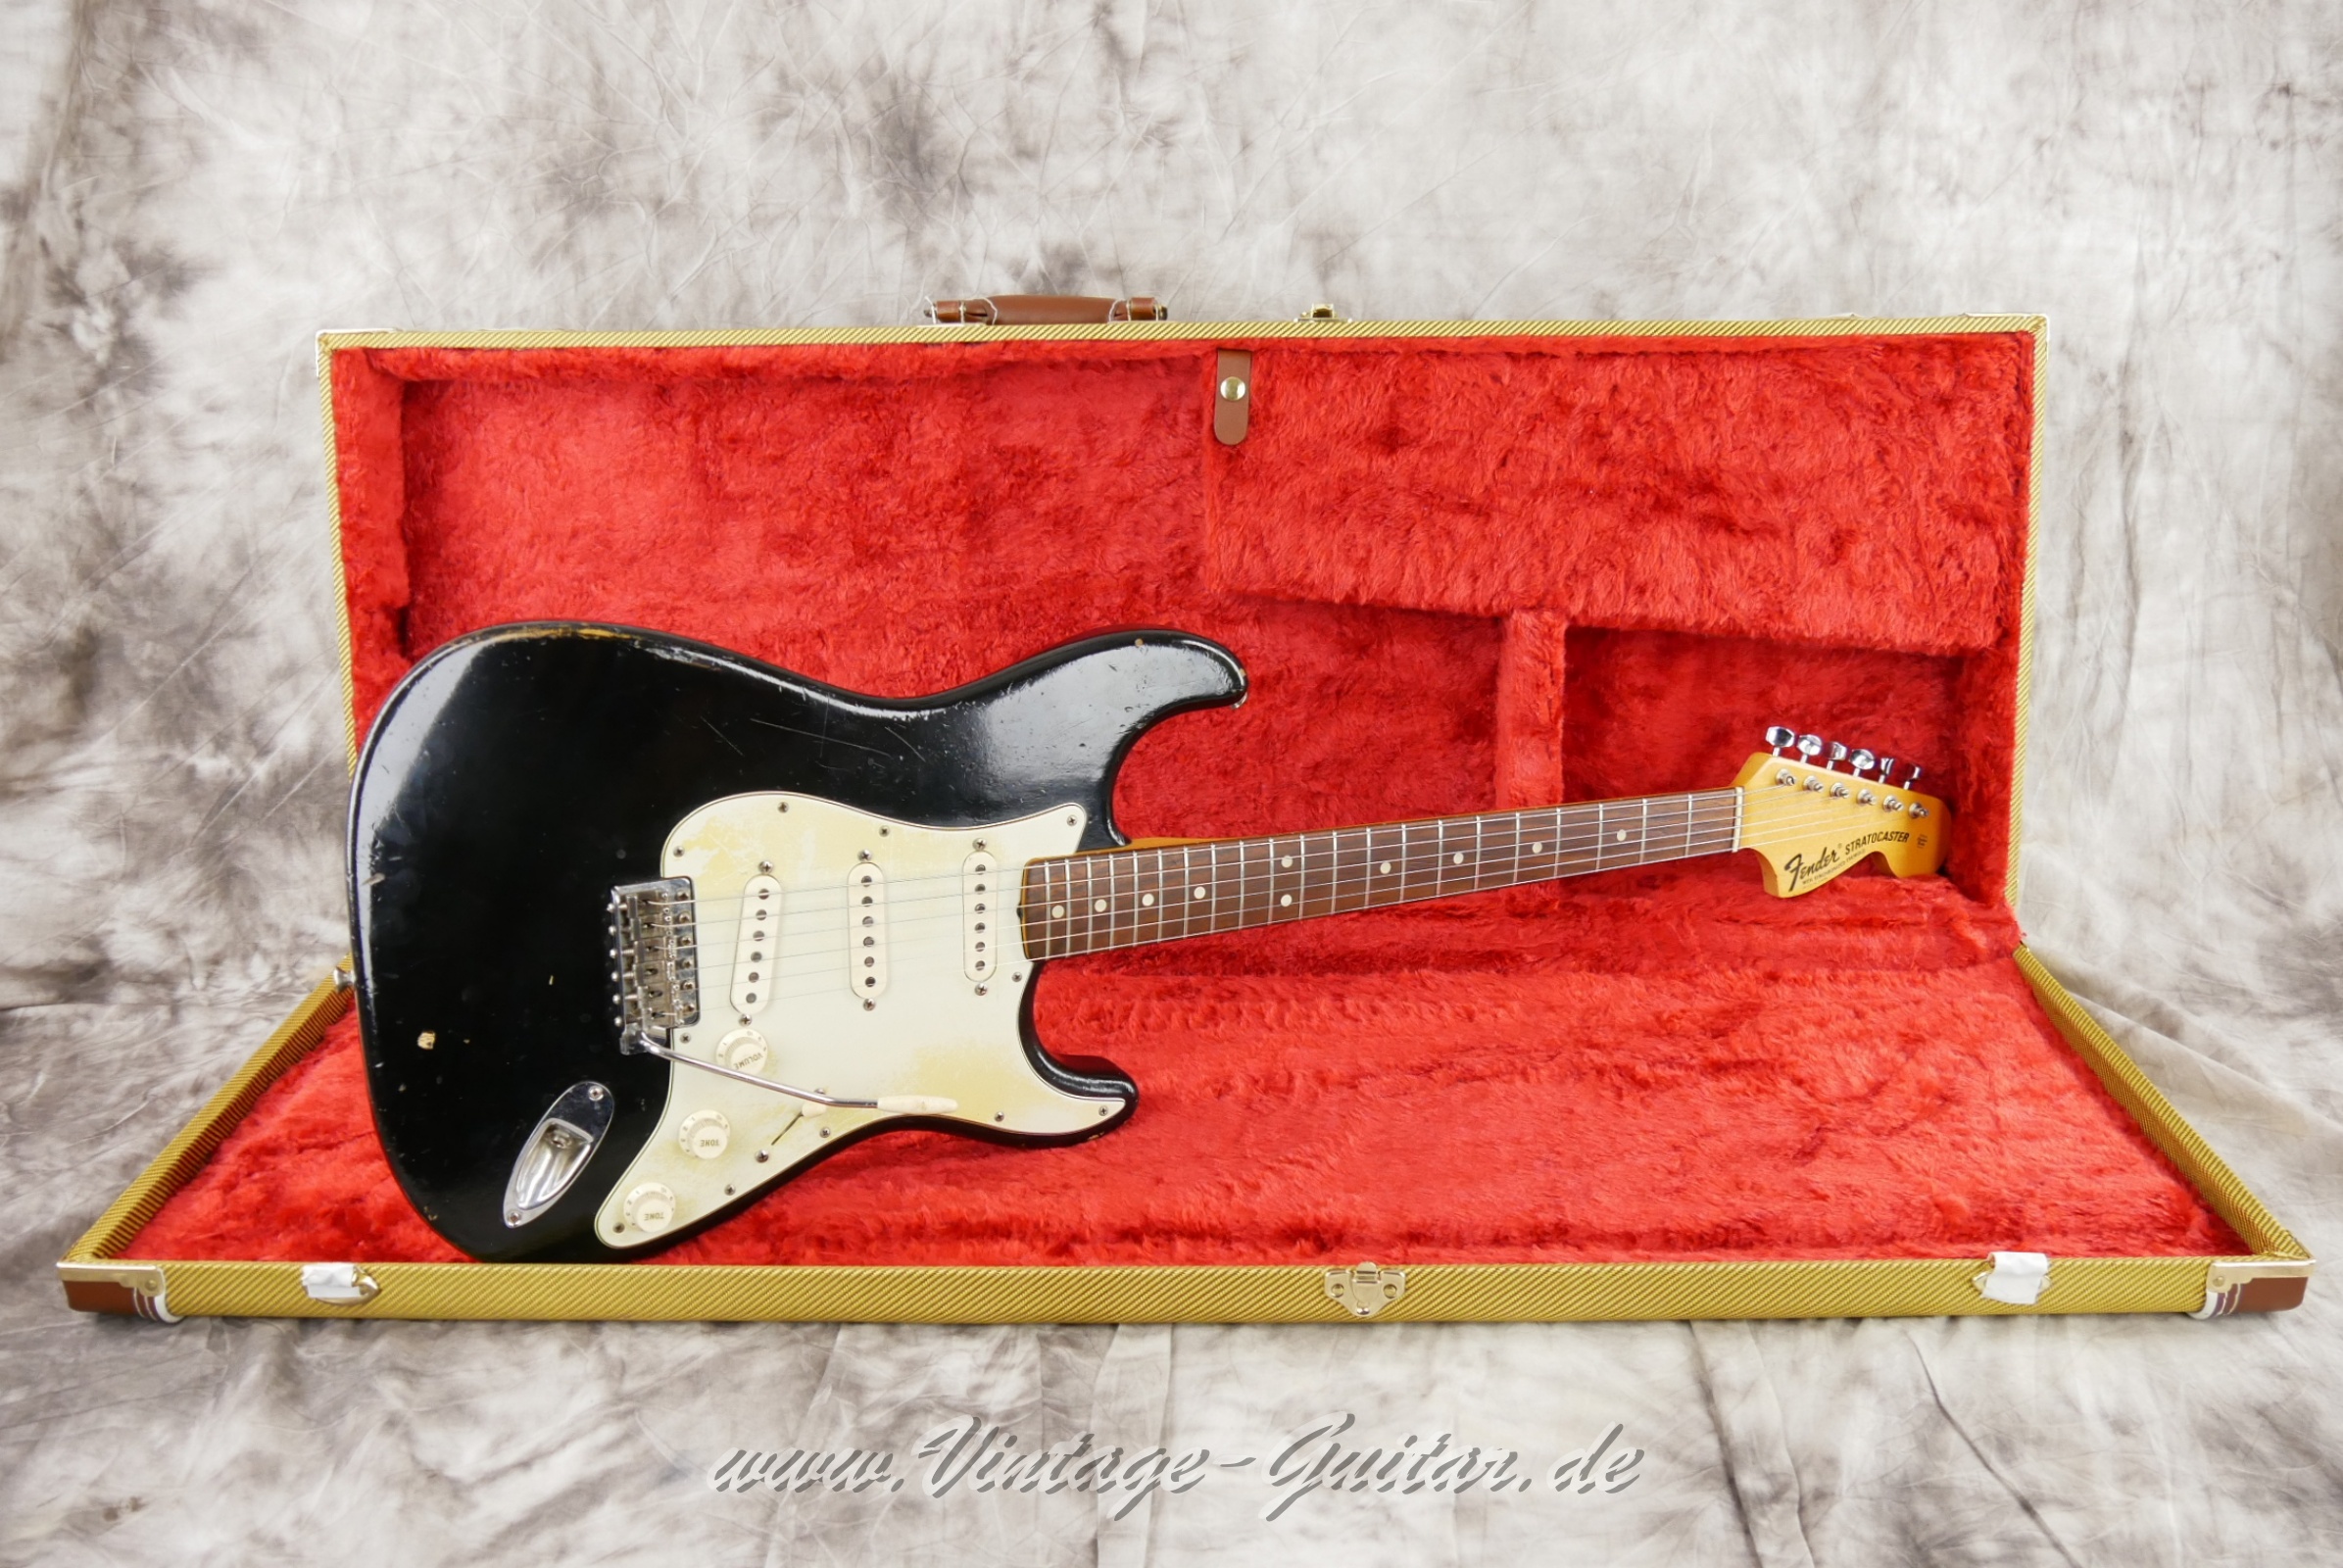 Fender-Stratocaster-1964-body-with-1969-neck-black-040.jpg